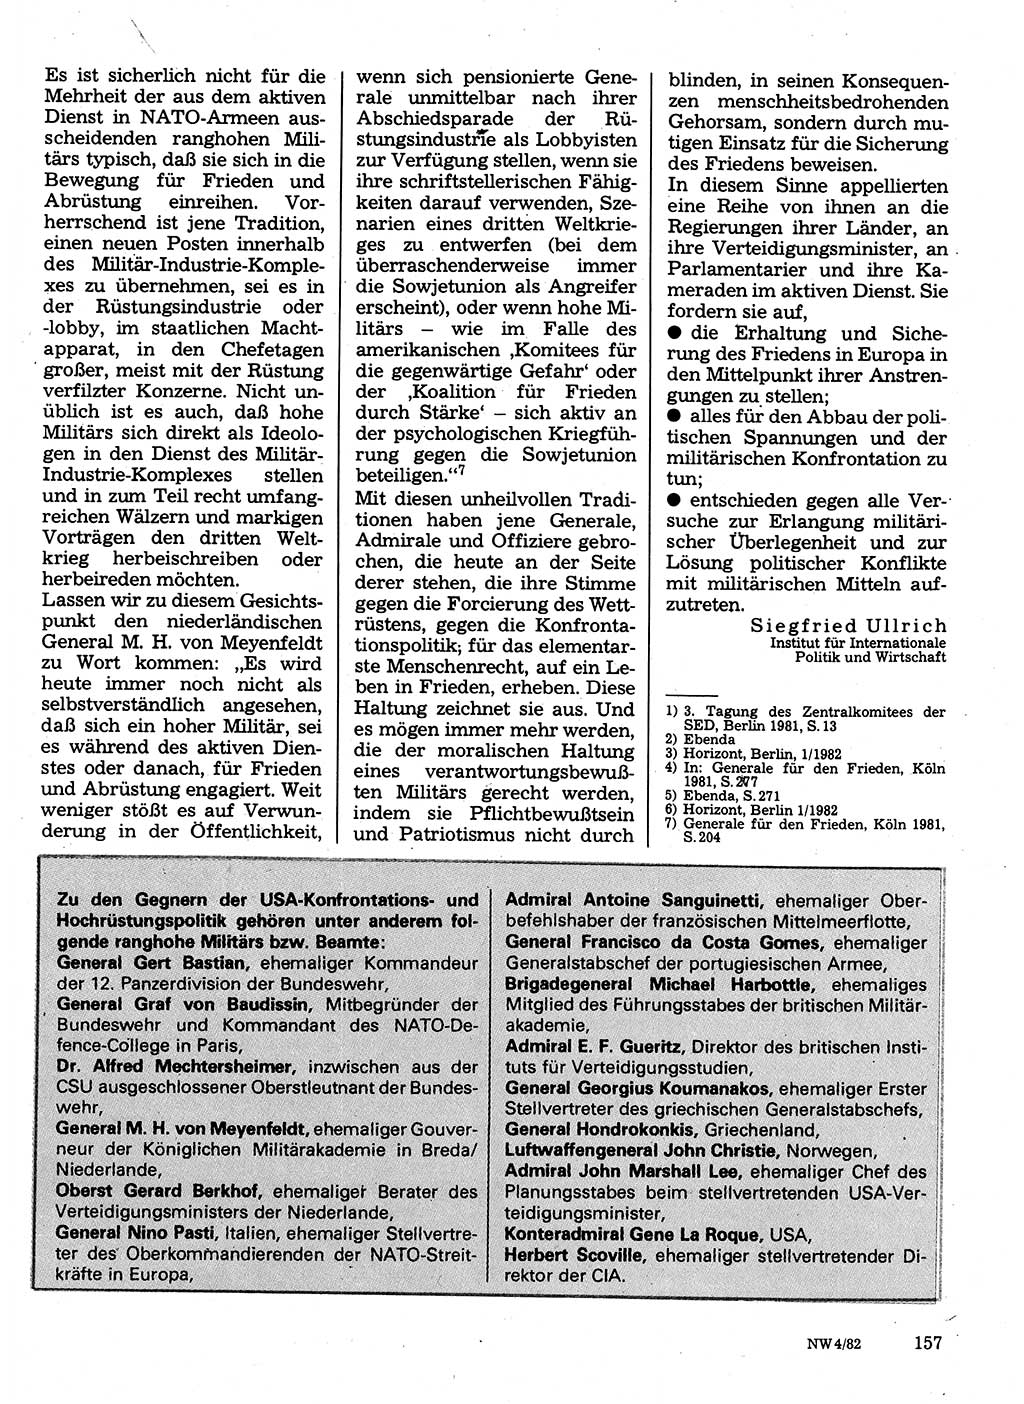 Neuer Weg (NW), Organ des Zentralkomitees (ZK) der SED (Sozialistische Einheitspartei Deutschlands) für Fragen des Parteilebens, 37. Jahrgang [Deutsche Demokratische Republik (DDR)] 1982, Seite 157 (NW ZK SED DDR 1982, S. 157)